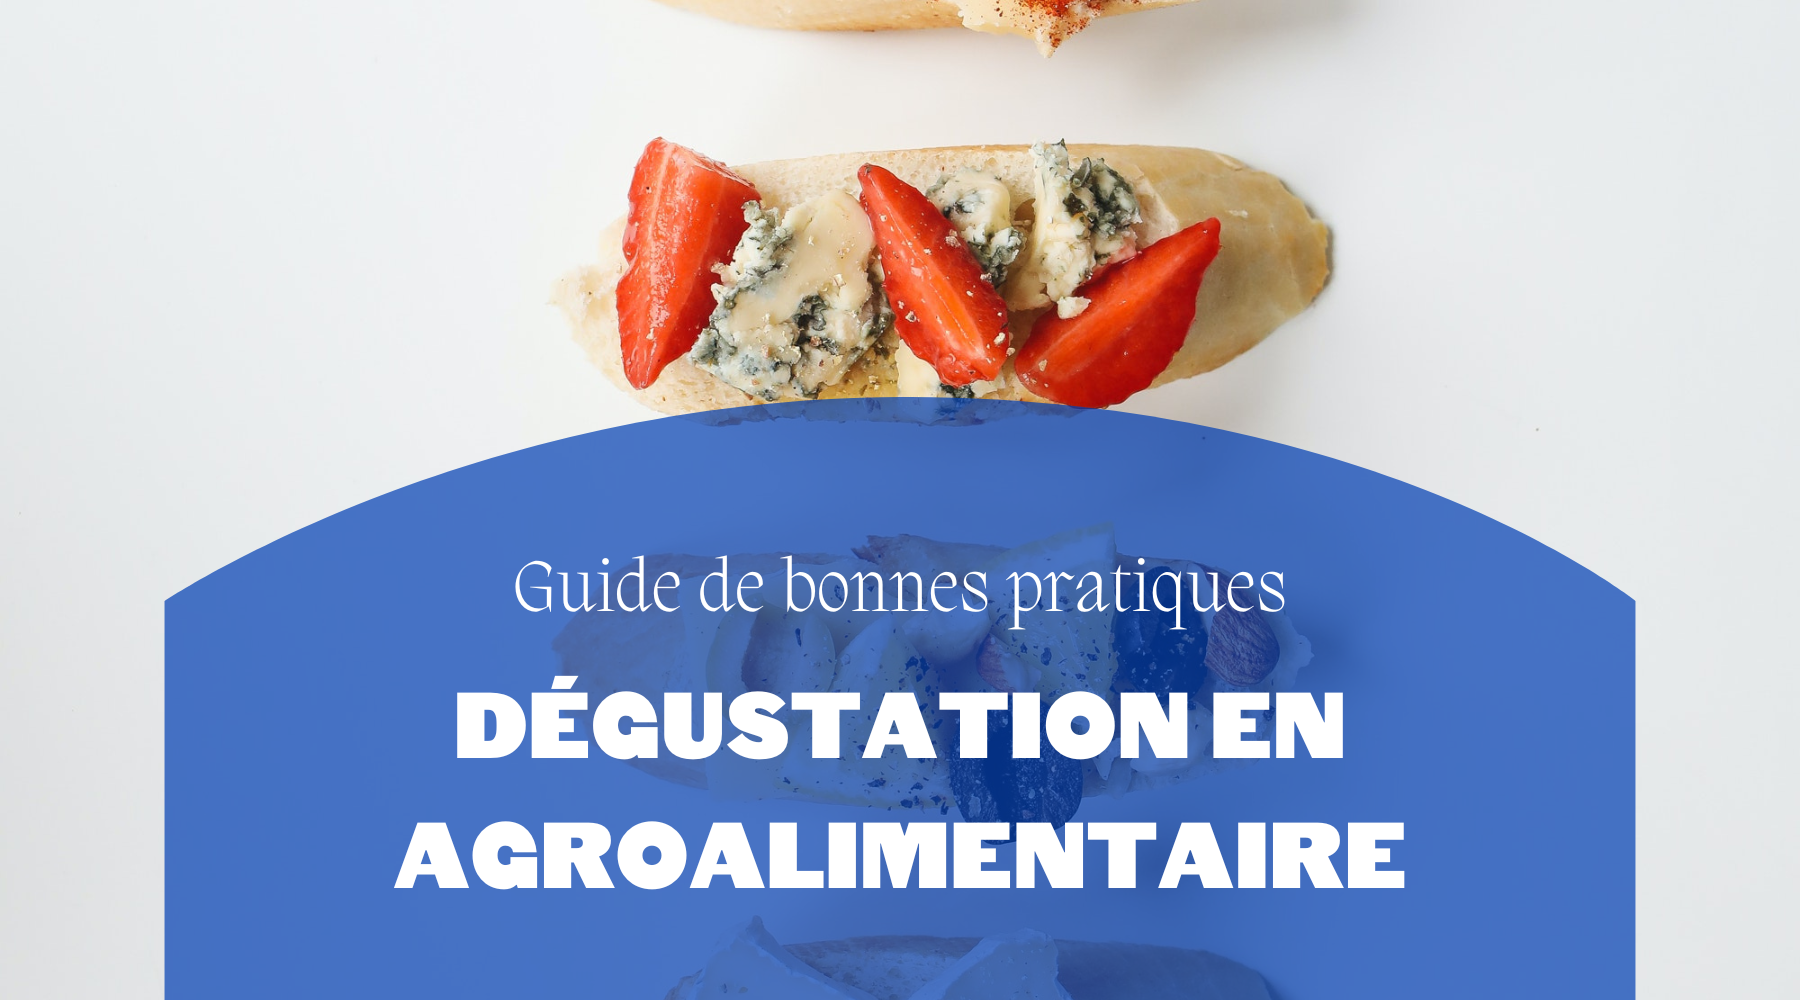 Guide de bonnes pratiques | Dégustation en agroalimentaire